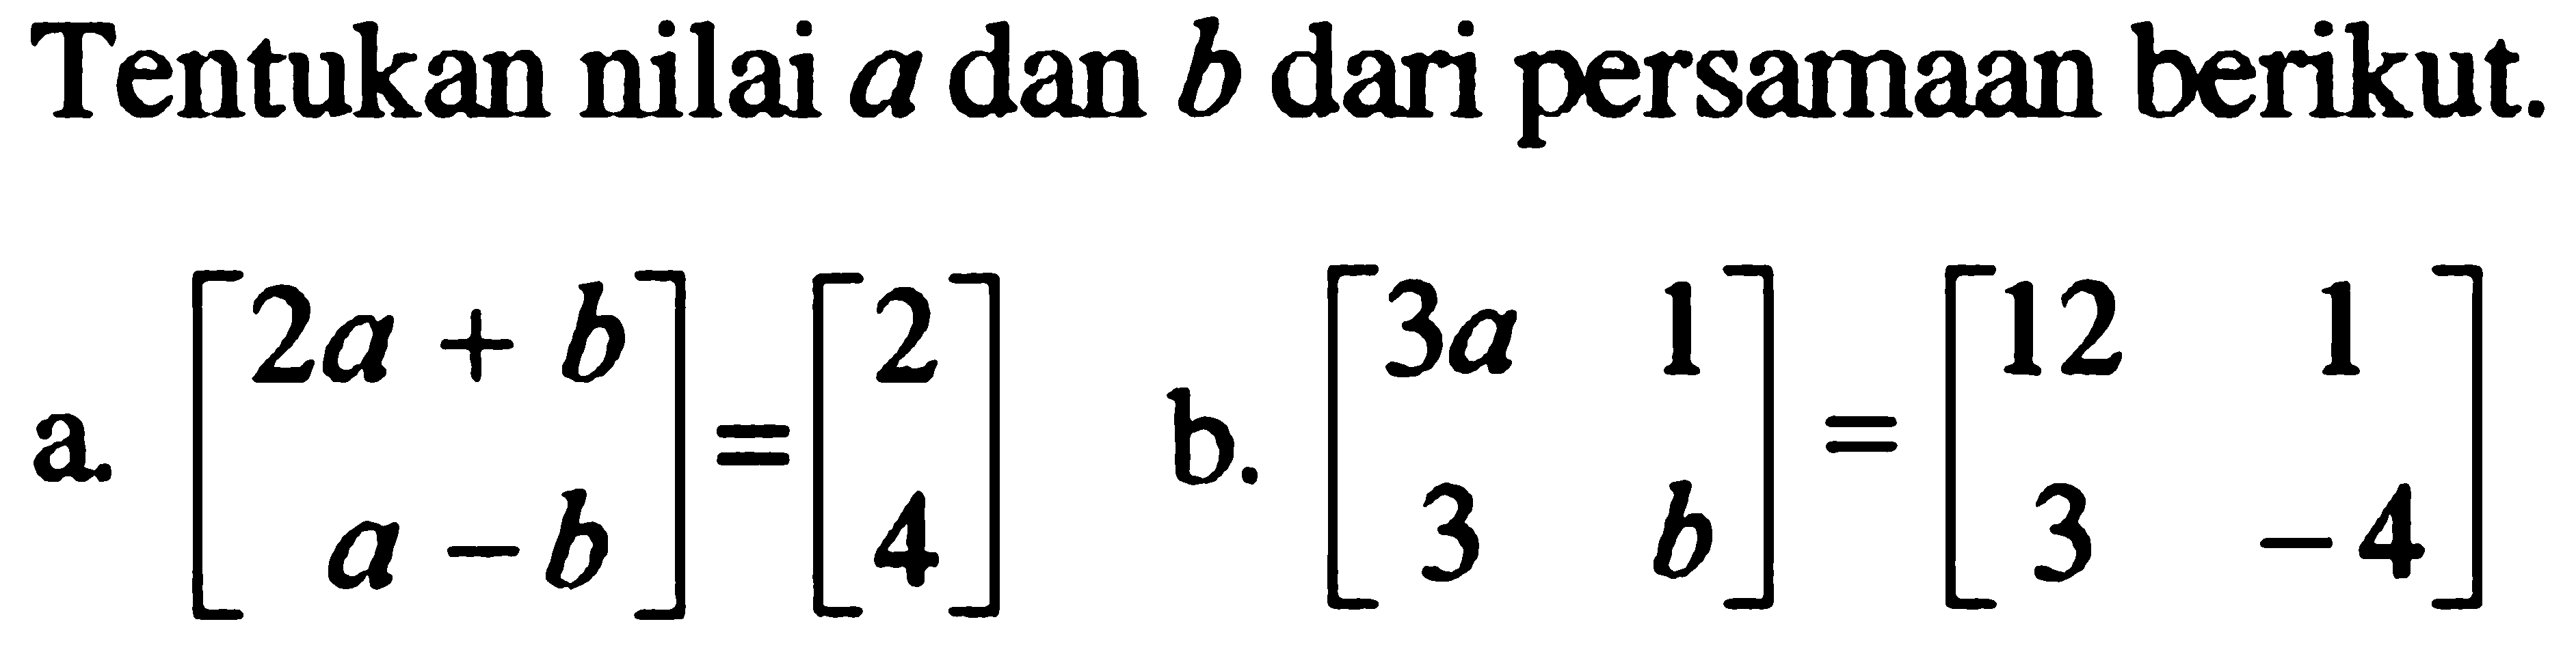 Tentukan nilai a dan b dari persamaan berikut. a. [2a+b a-b]=[2 4] b. [3a 1 3 b]=[12 1 3 -4]